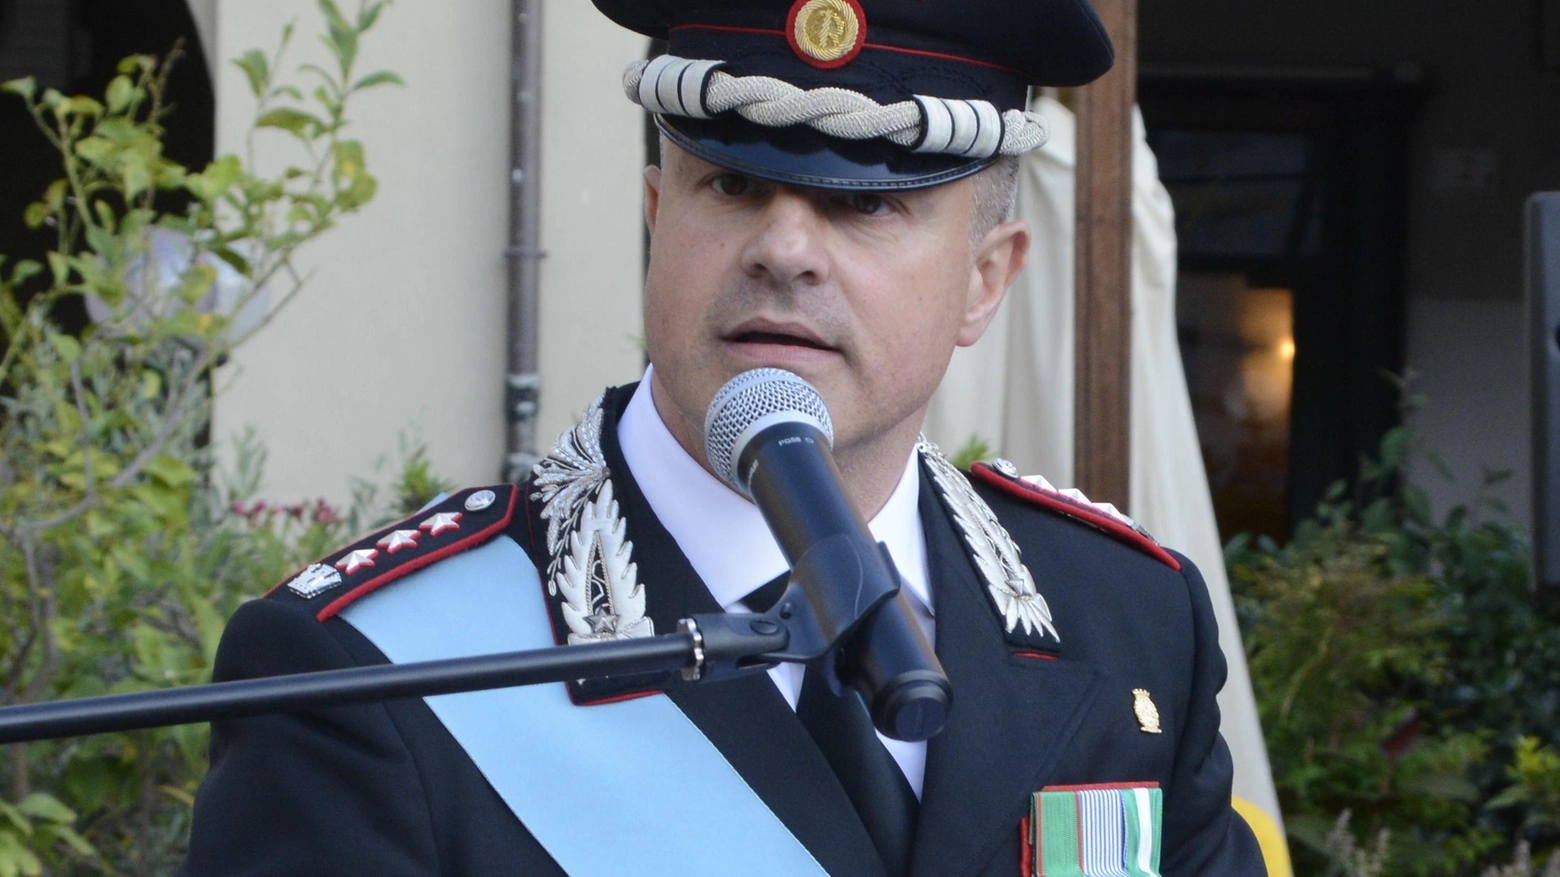 La festa e il bilancio  L’anno dei Carabinieri  "Risolti 1528 casi  e arrestate 126 persone"